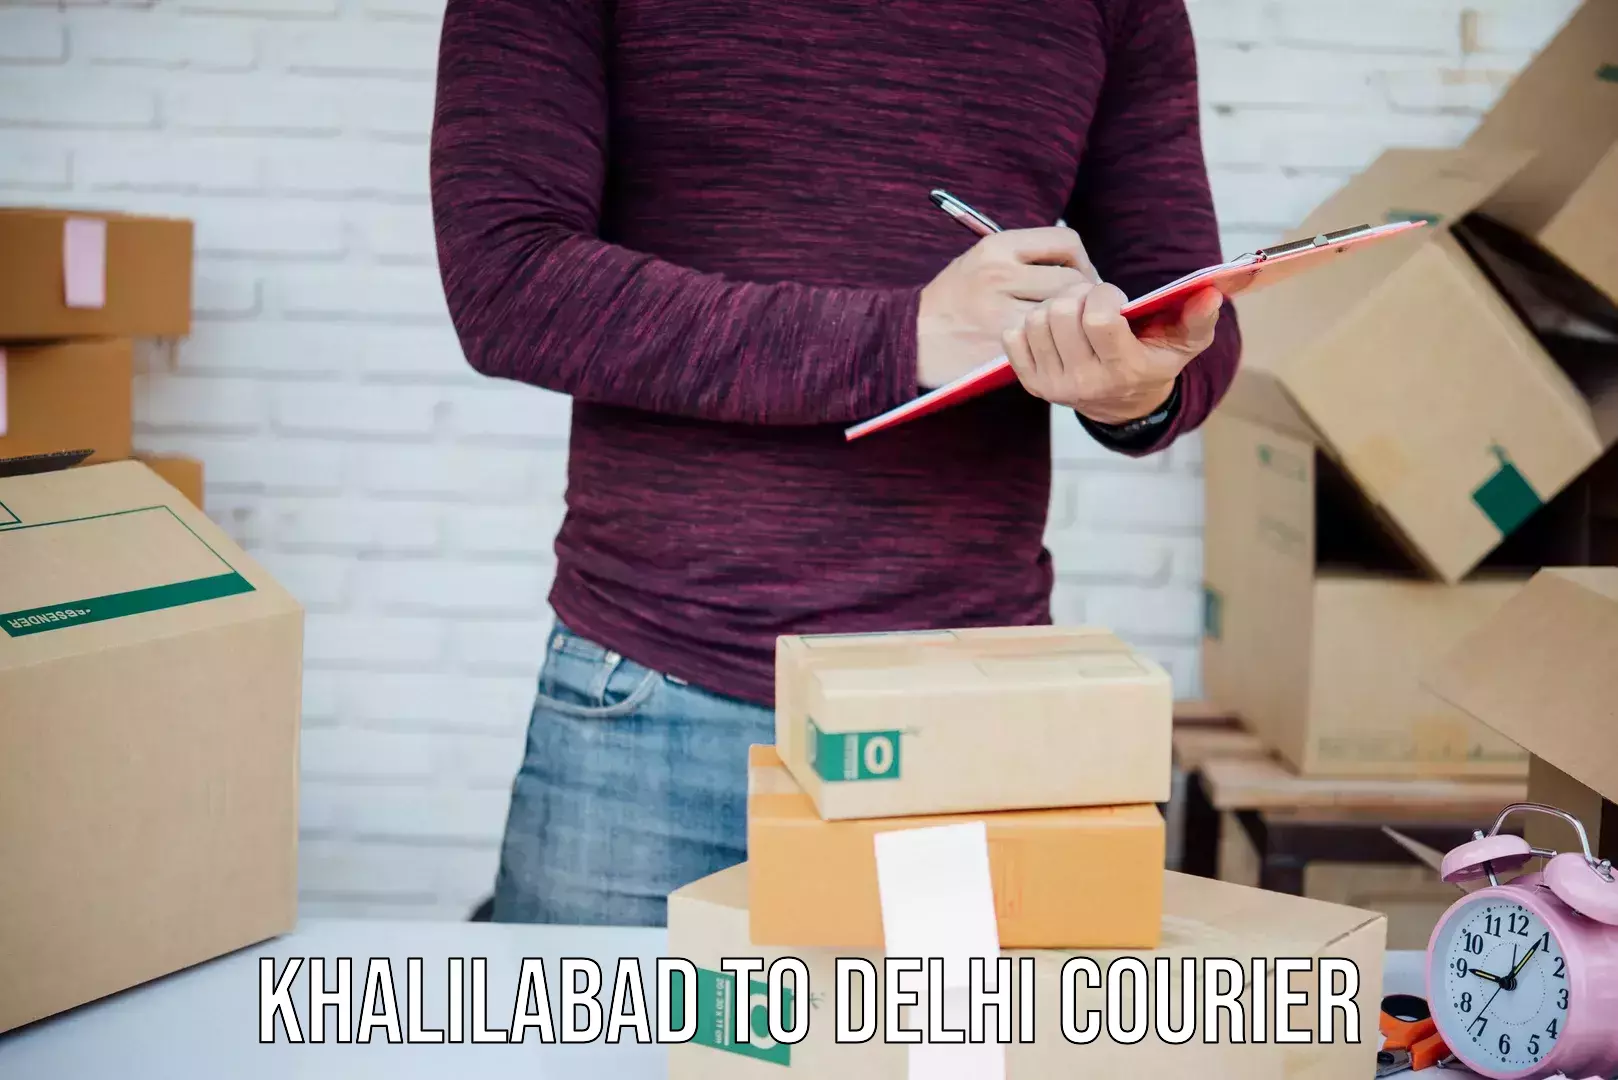 Global shipping solutions Khalilabad to NIT Delhi